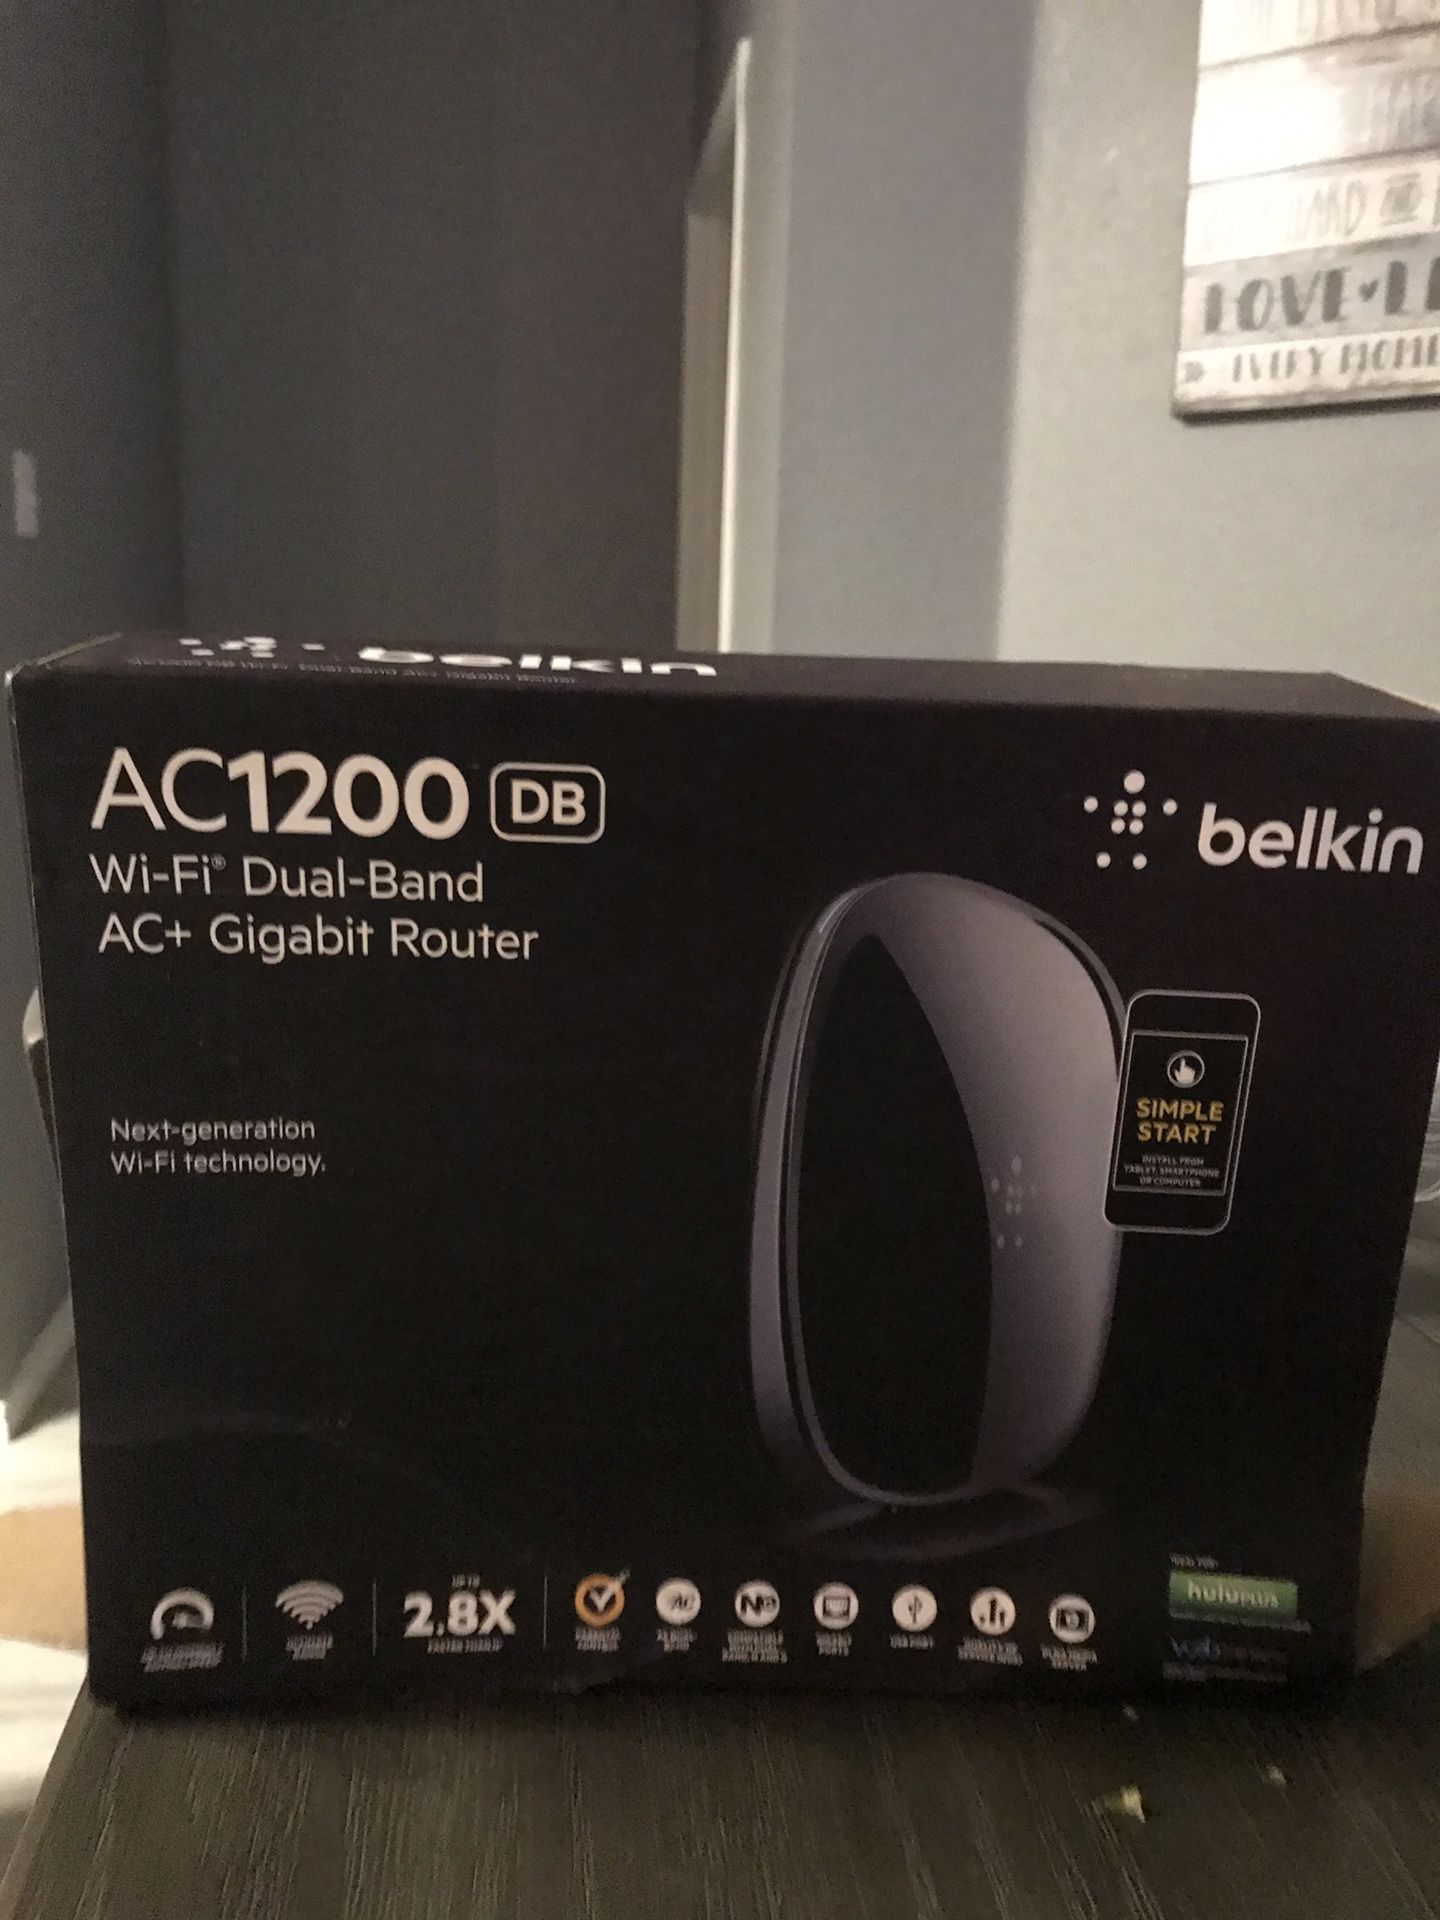 Belkin AC 1200 wireless router